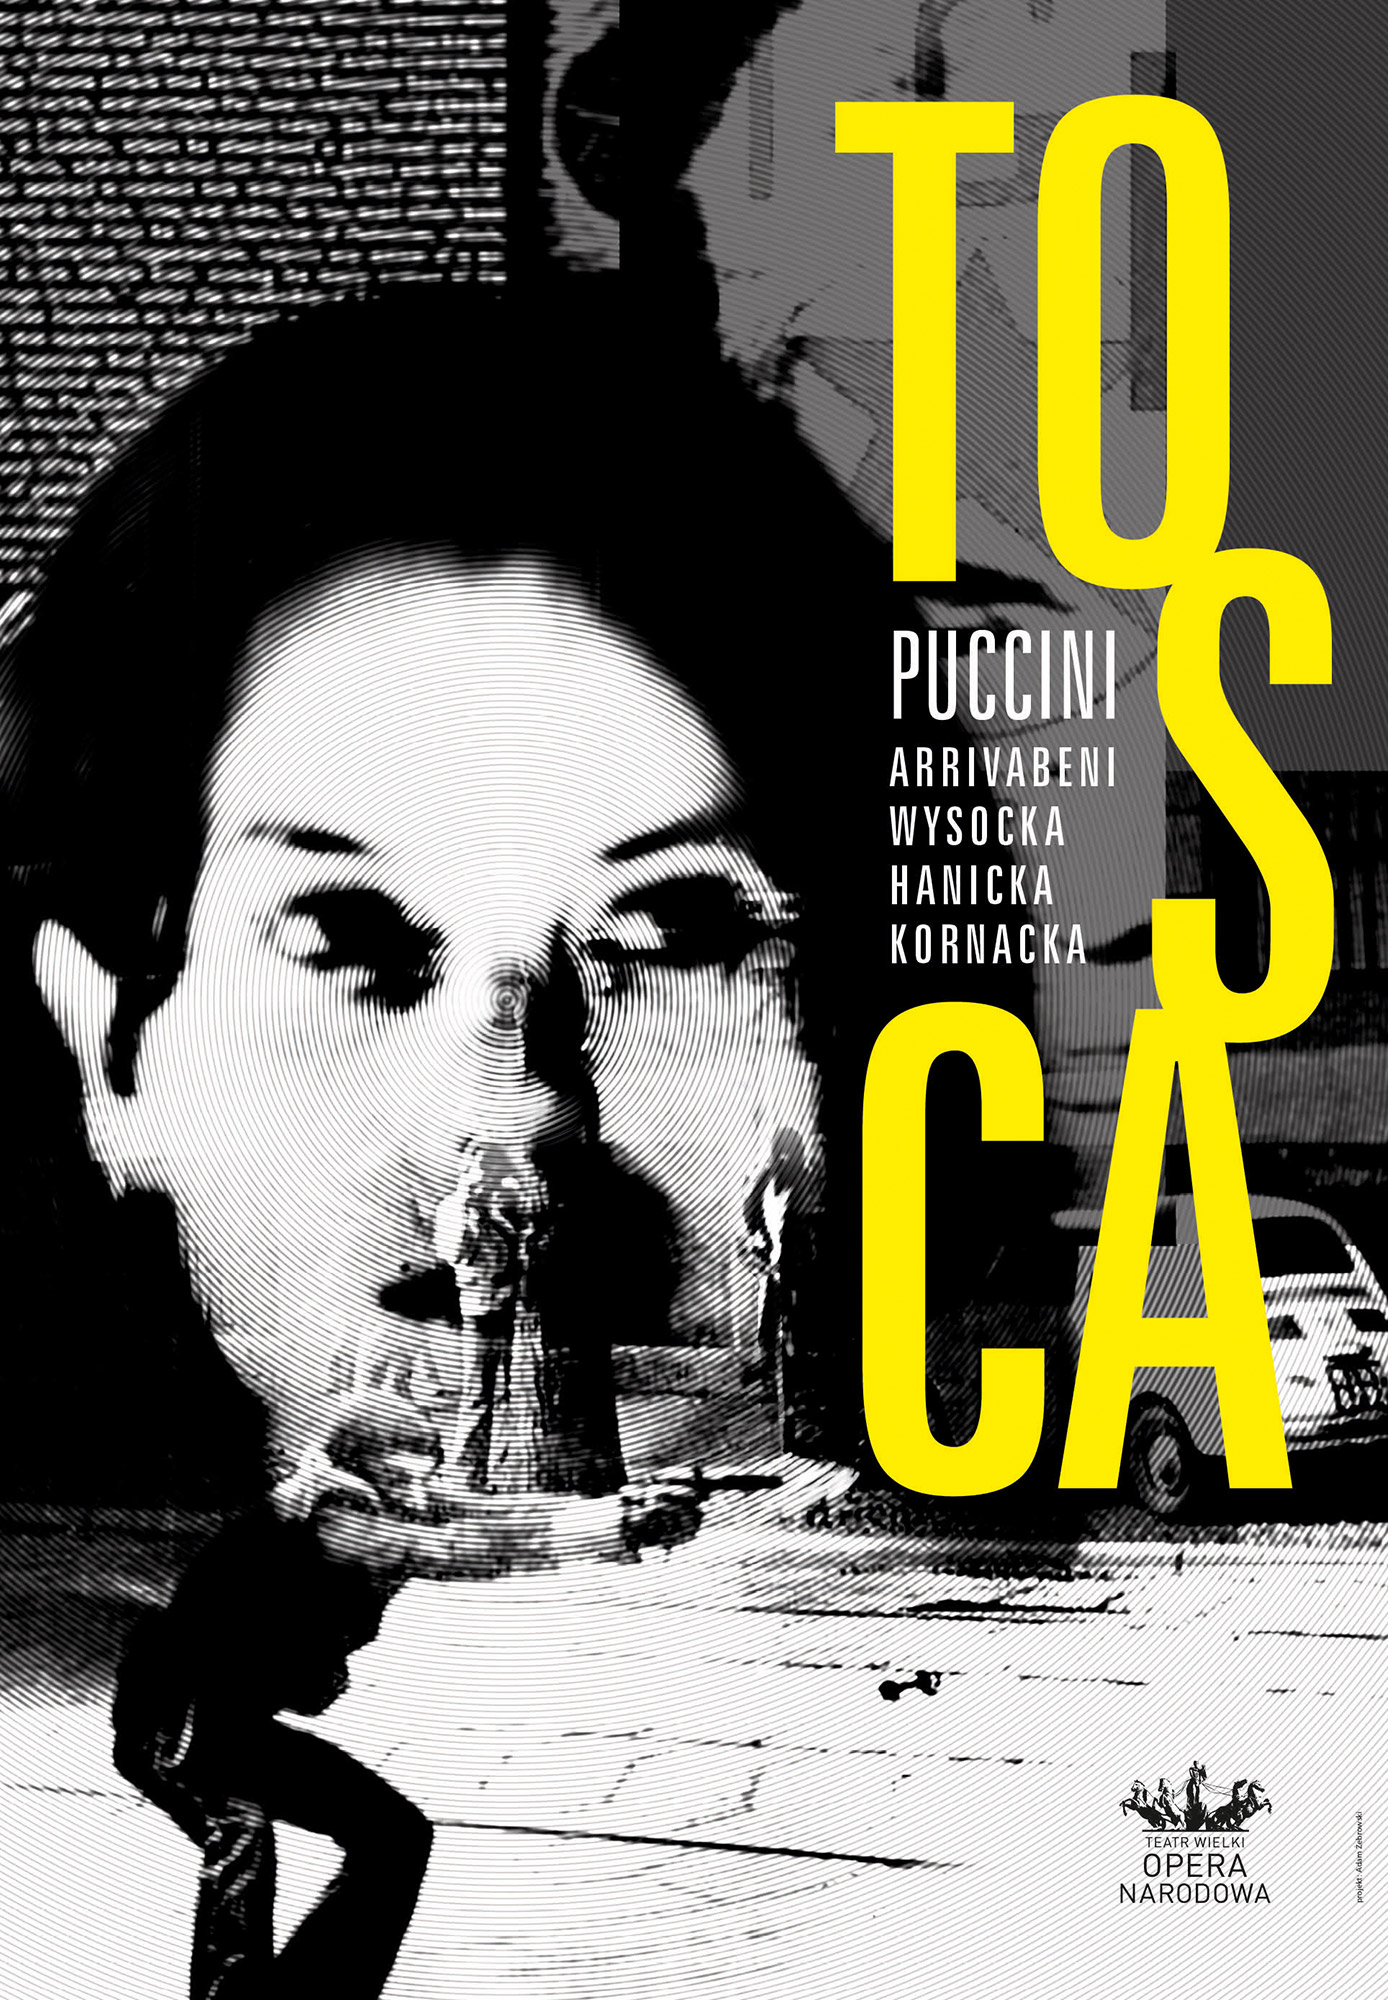 TOSCA – Giacomo Puccini, plakat (źródło: materiały prasowe)